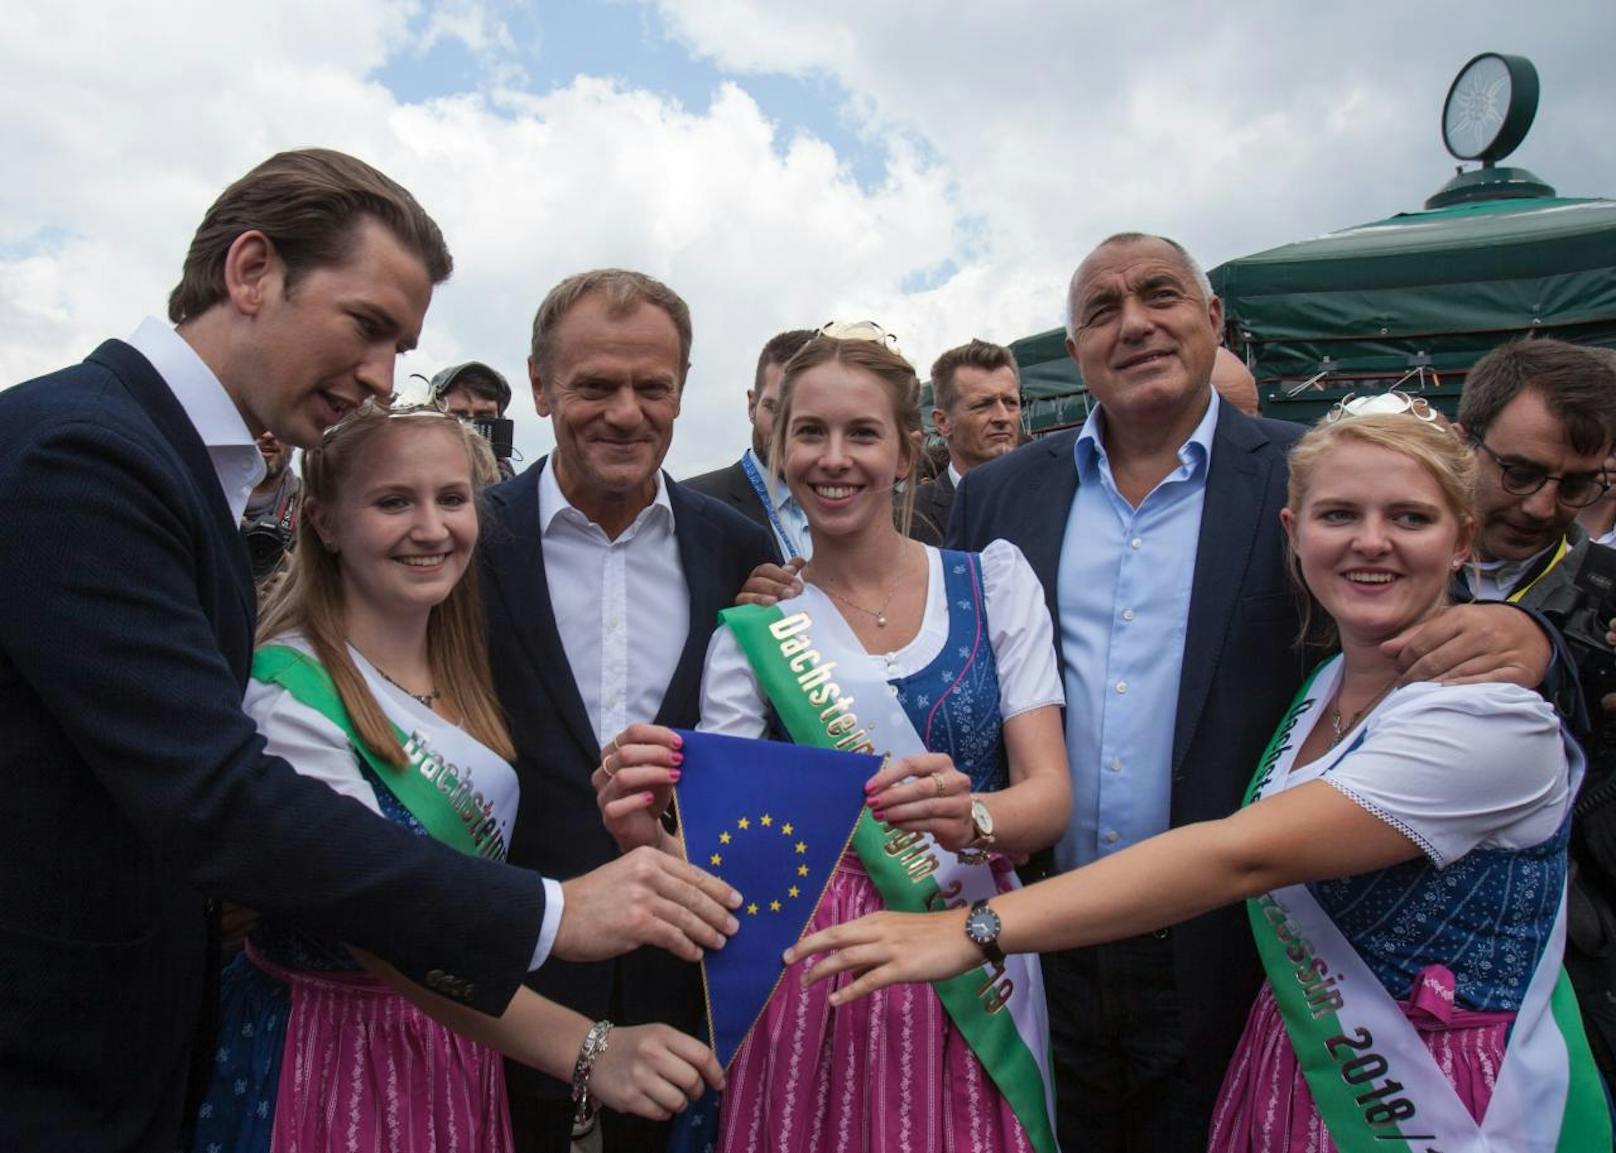 Bundeskanzler Sebastian Kurz (ÖVP), EU-Ratspräsident Donald Tusk und der bulgarische Premierminister Bojko Borissow beim Auftakt des österreichischen EU-Ratsvorsitzes am Samstag, 30. Juni 2018 in Schladming.